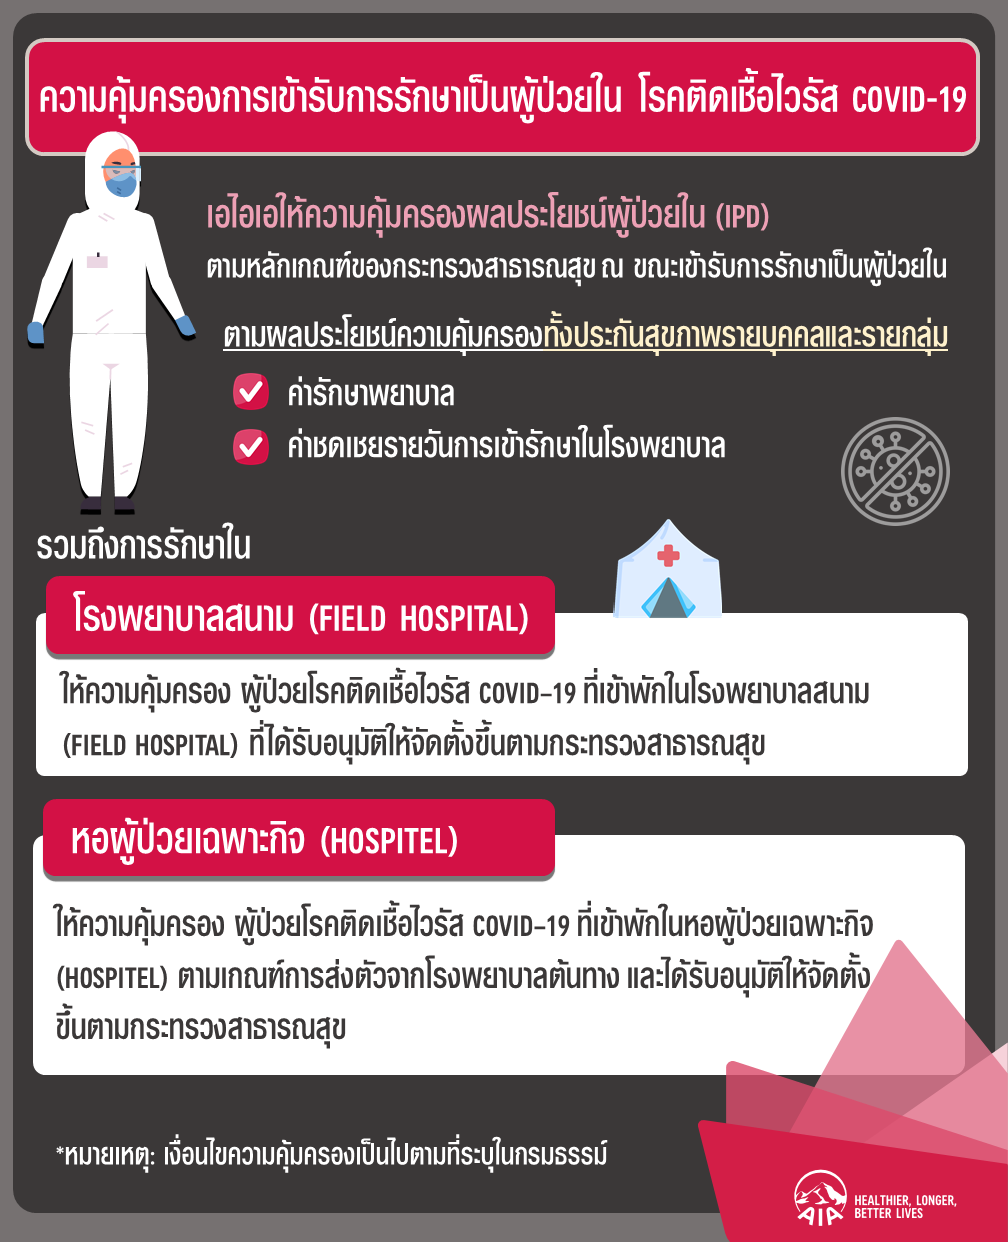 เอไอเอ ประเทศไทย ตอกย้ำความเชื่อมั่นแก่ผู้เอาประกันภัยที่มีความคุ้มครองผลประโยชน์ผู้ป่วยใน (IPD) ในการเข้ารักษาตัวในโรงพยาบาลสนาม (Field Hospital) และหอผู้ป่วยเฉพาะกิจ (Hospitel) กรณีเจ็บป่วยด้วยโรคติดเชื้อไวรัสโควิด-19